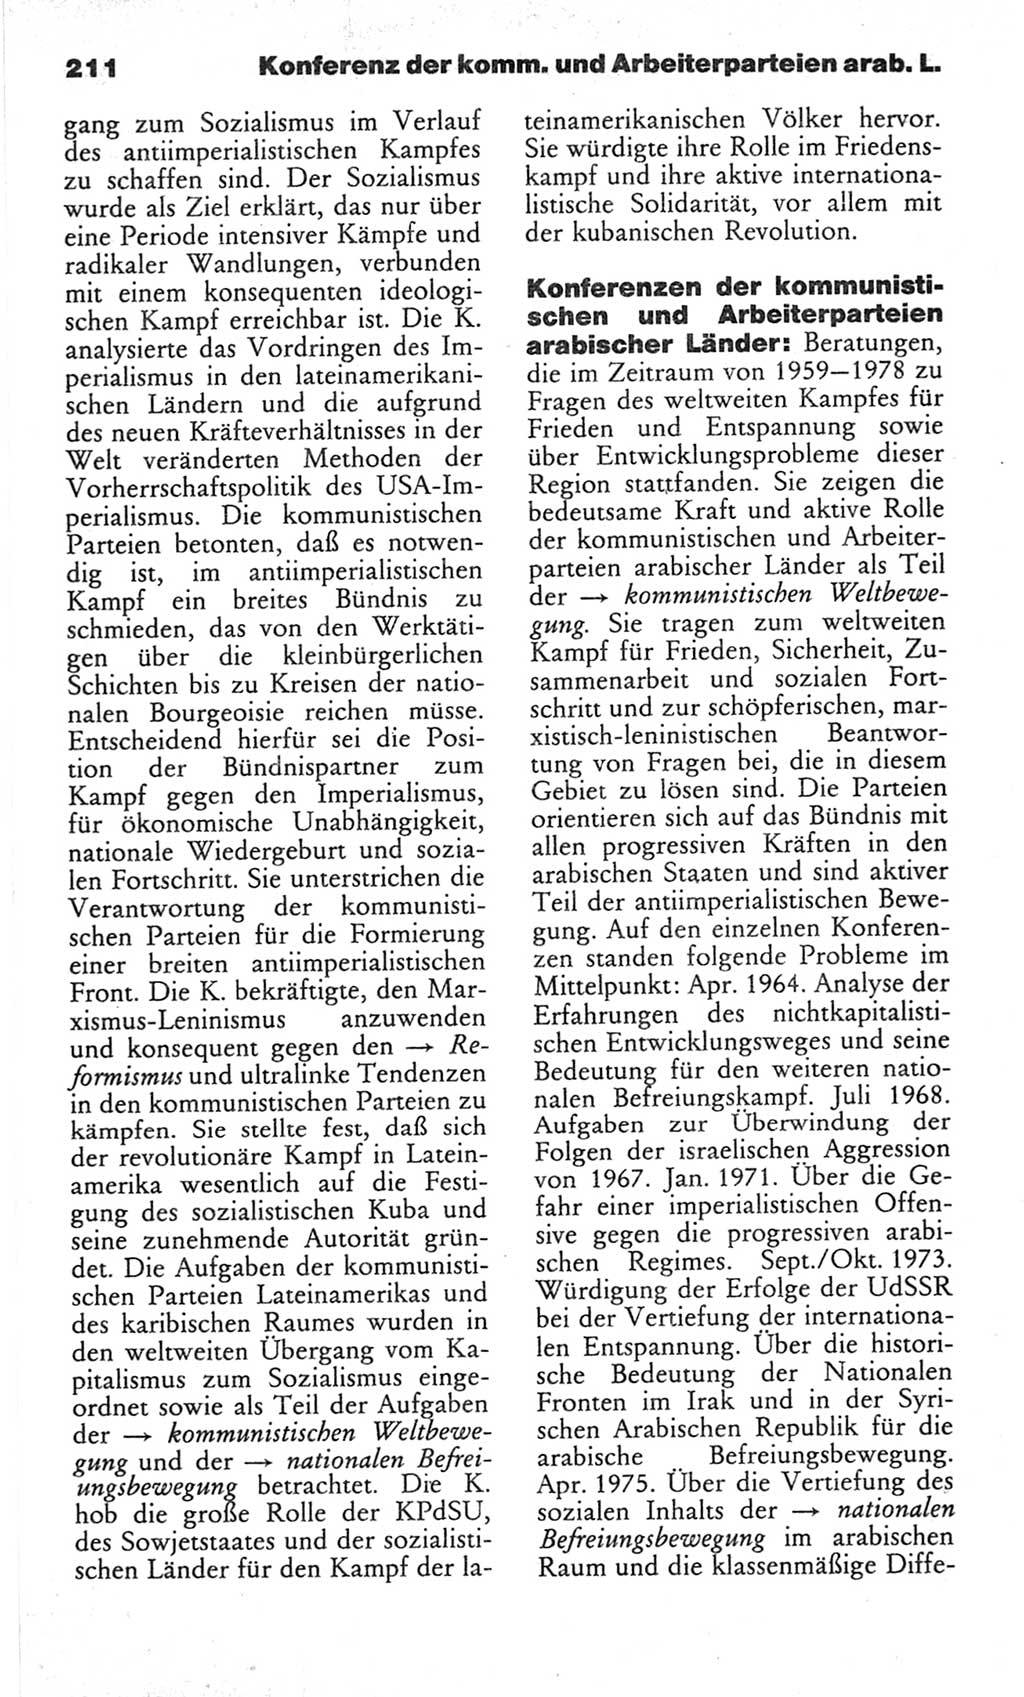 Wörterbuch des wissenschaftlichen Kommunismus [Deutsche Demokratische Republik (DDR)] 1982, Seite 211 (Wb. wiss. Komm. DDR 1982, S. 211)